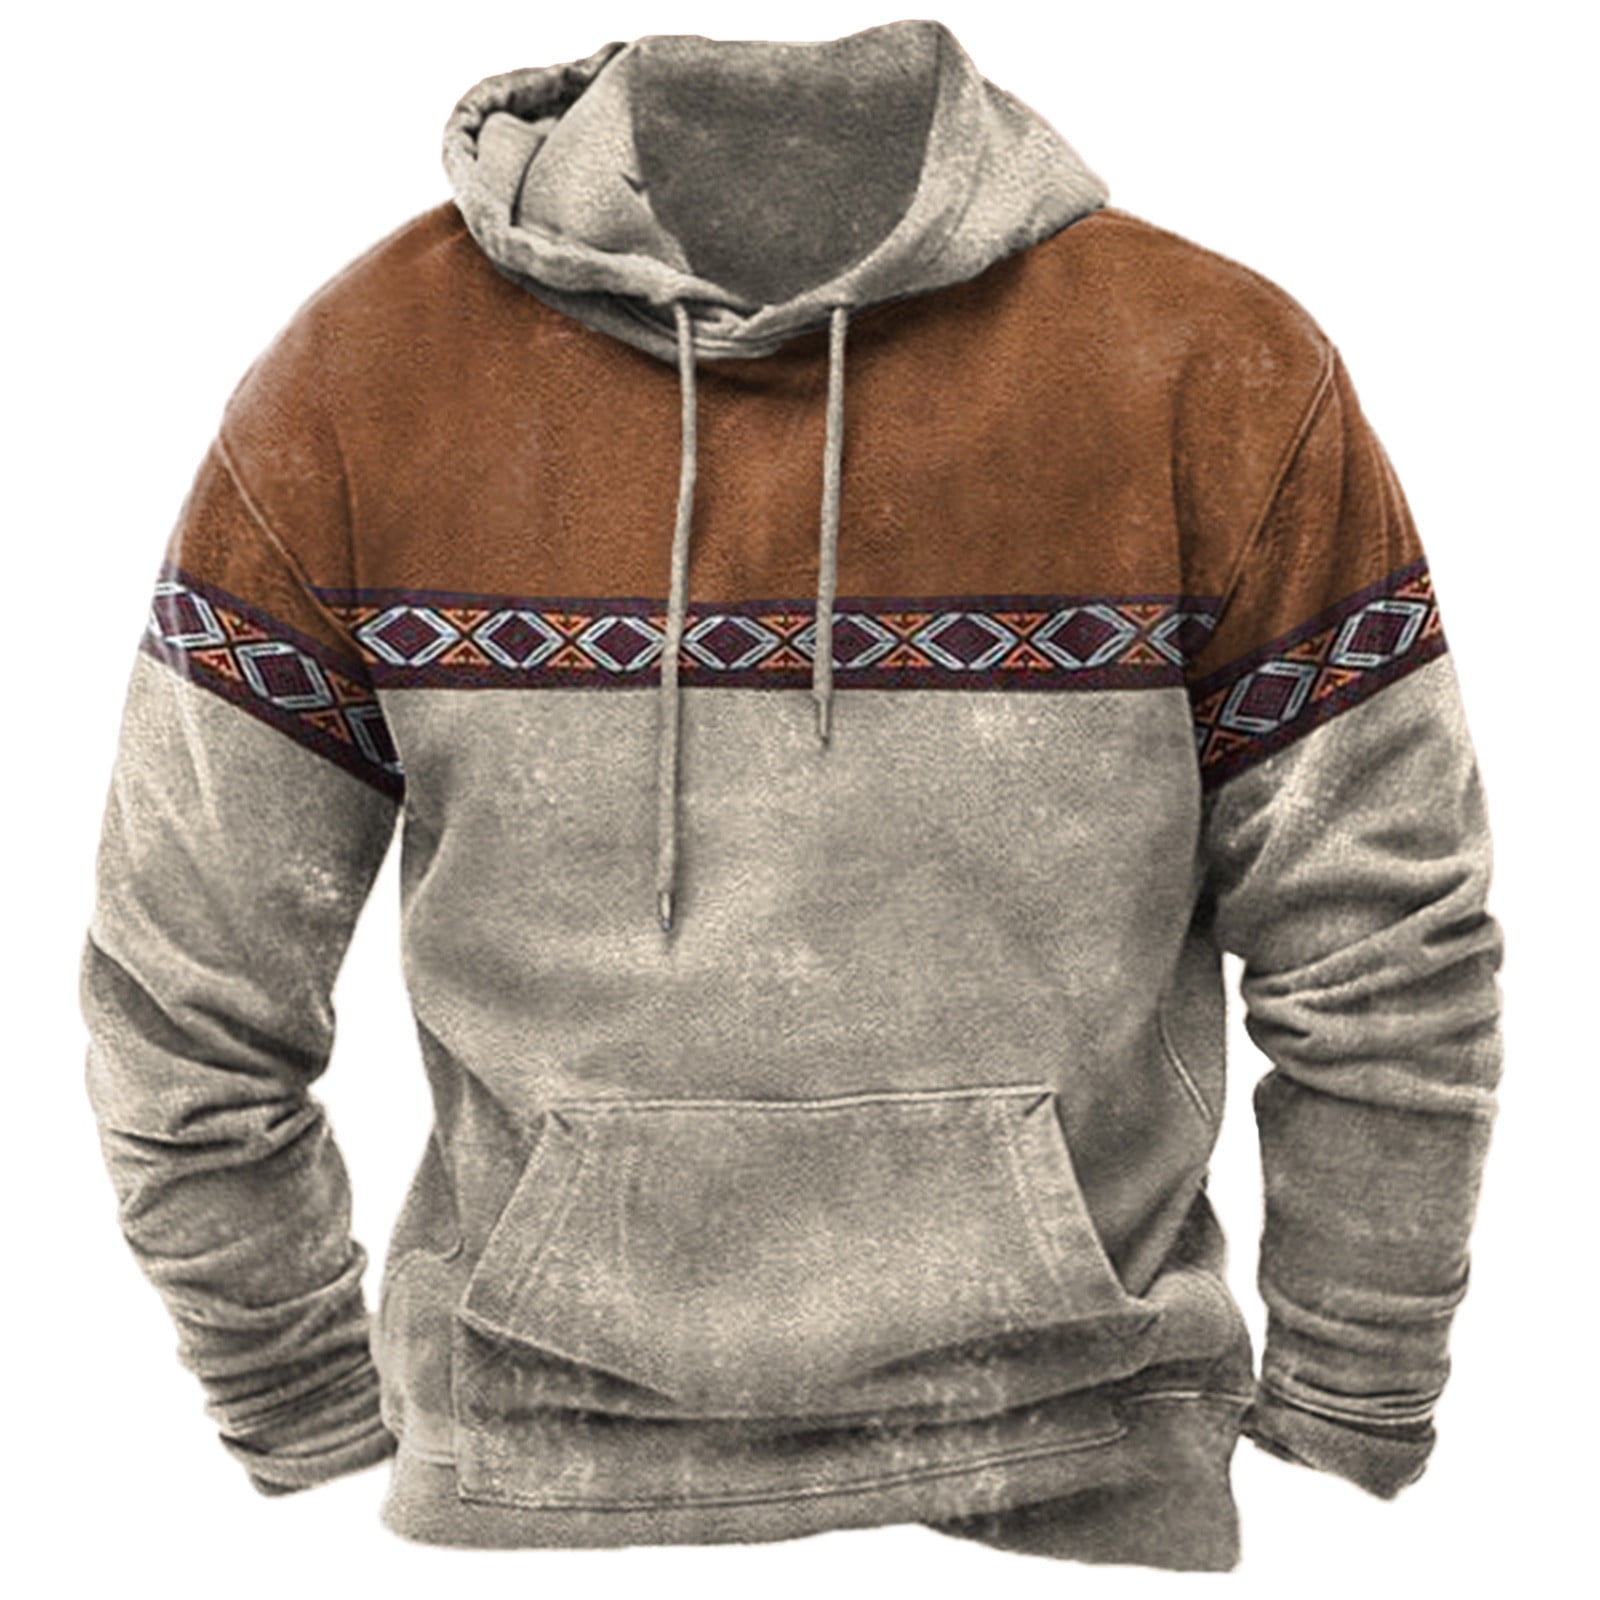 Mens Vintage Aztec Sweatshirt Hoodie Western Retro Pockets Pullover Tribal  Patchwork Long Sleeve Graphic Hoodies Top 